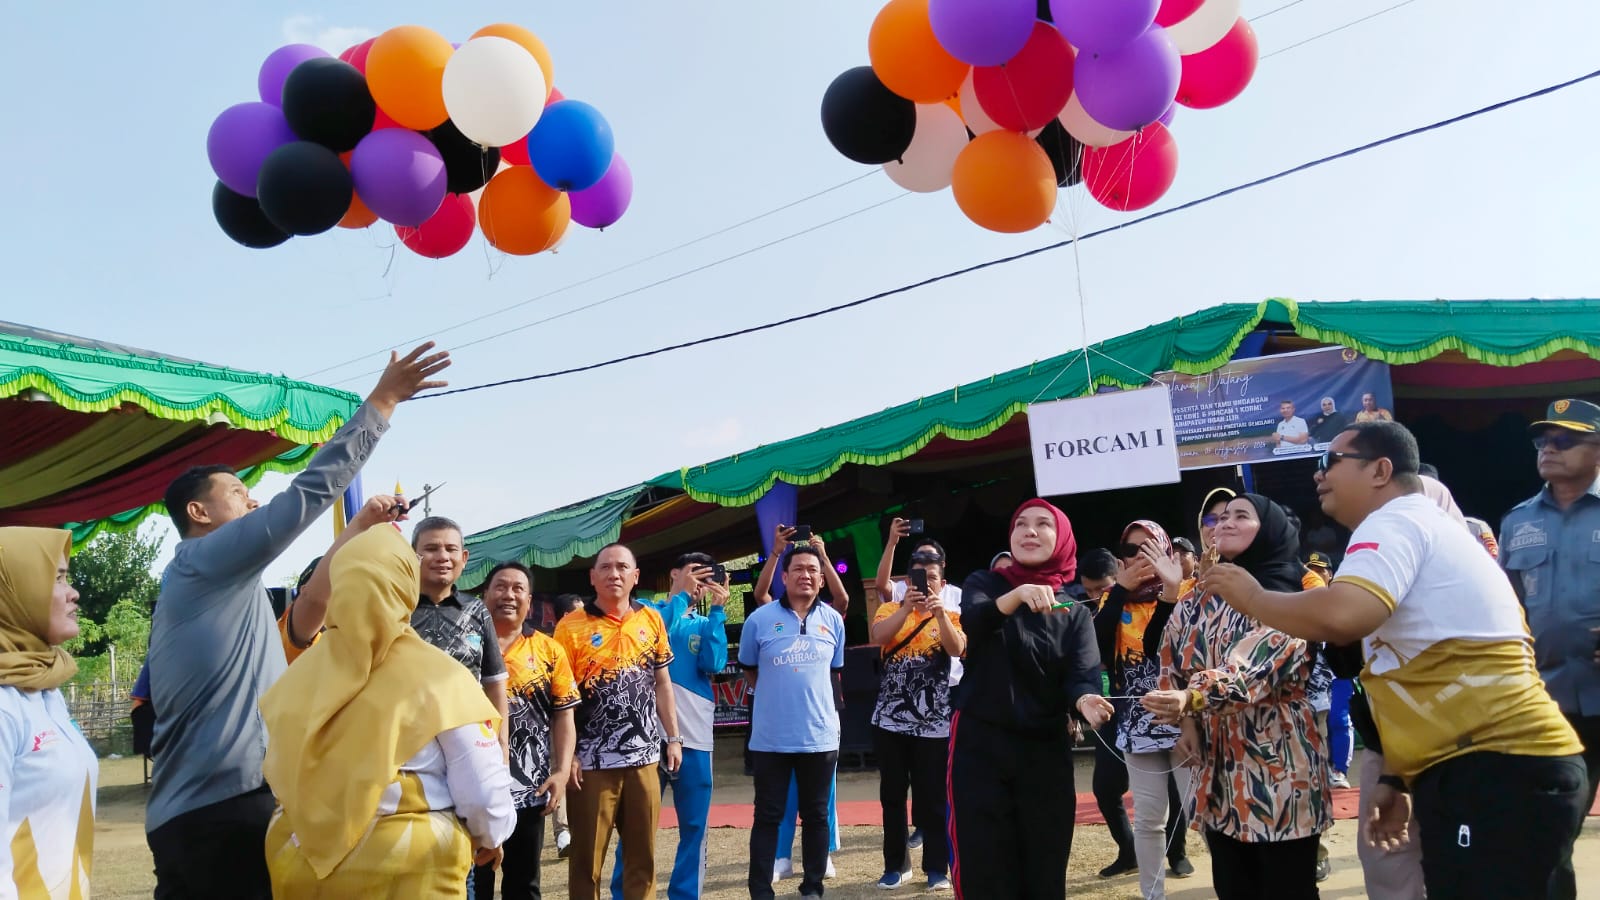 Porcam III dan Forcam I Kormi Tingkat Kecamatan Payaraman Ogan Ilir Resmi Digelar, Ratusan Atlet Siap Bersaing